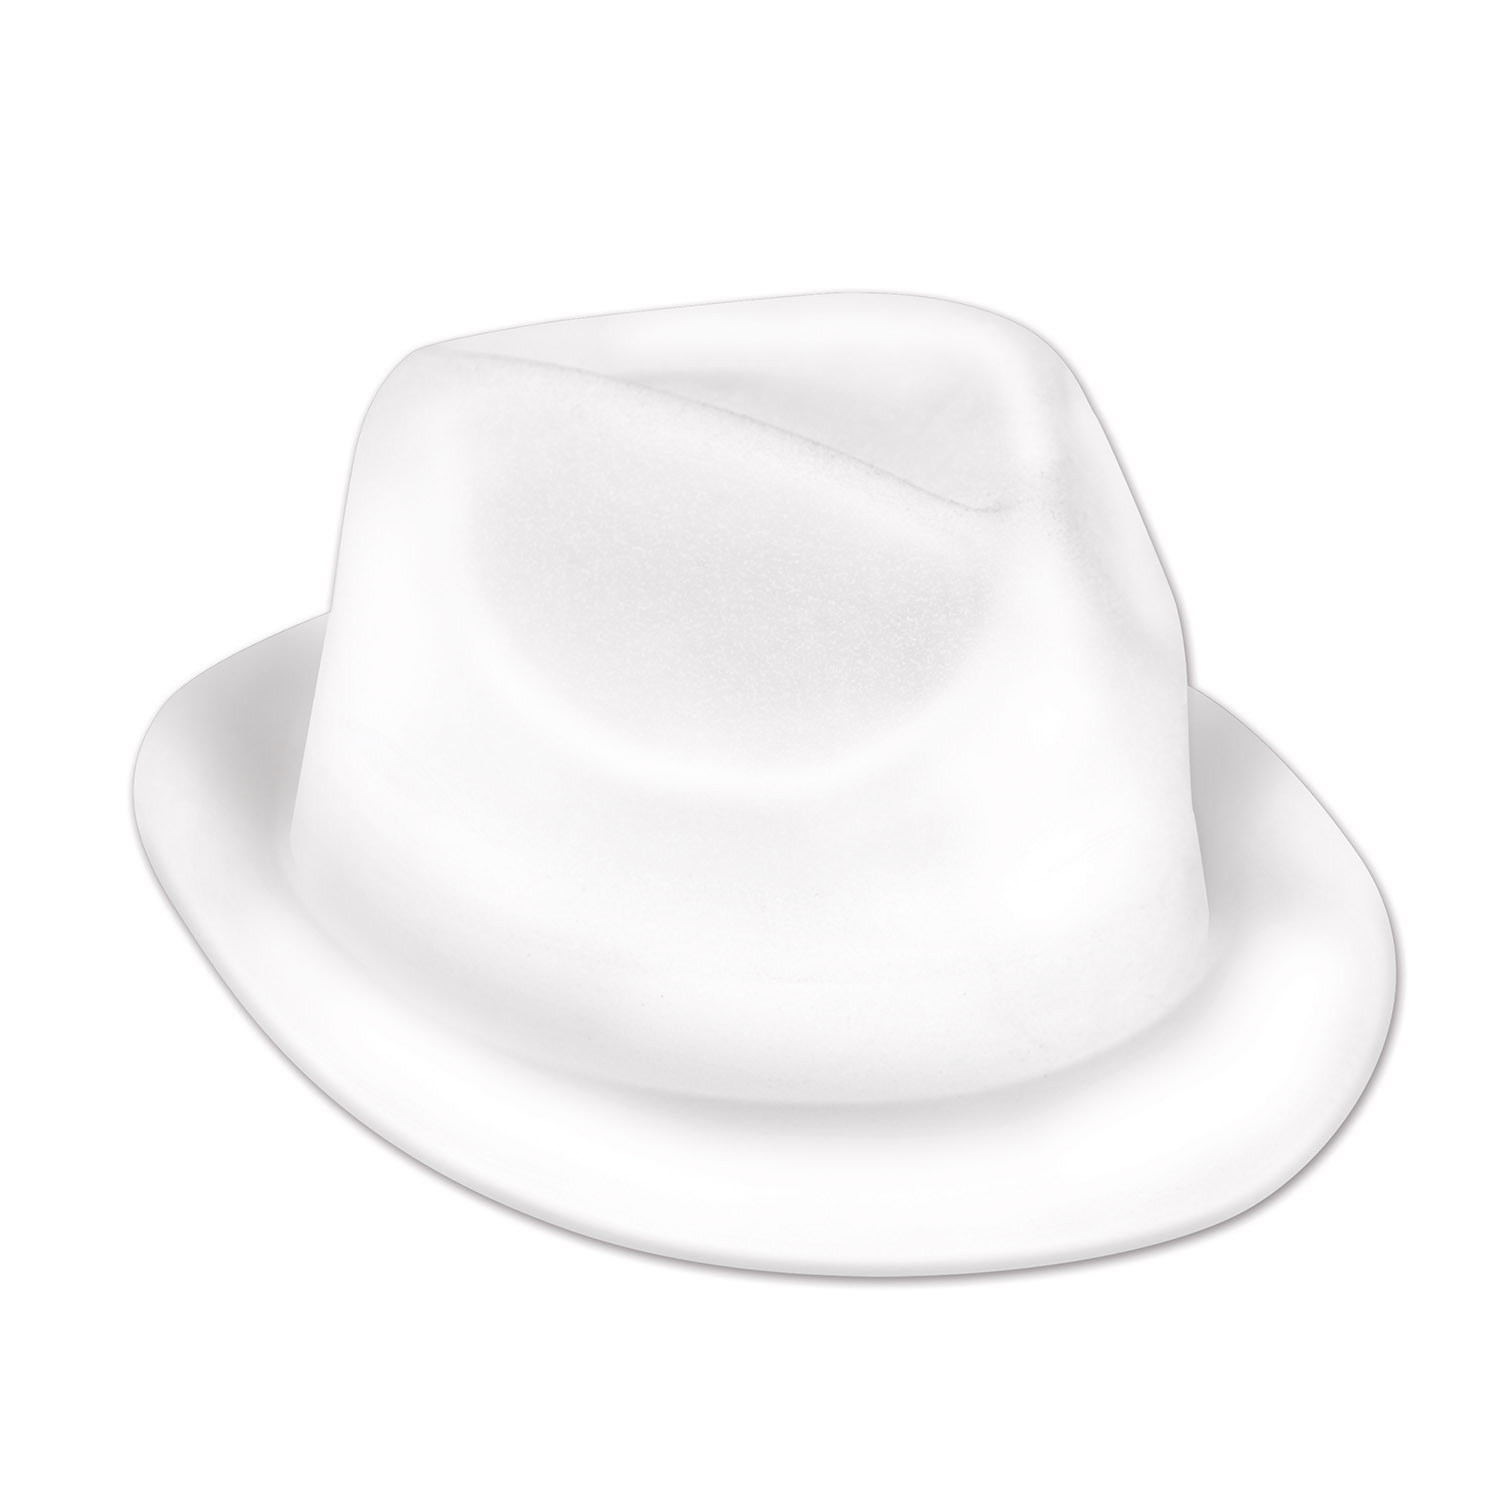 Plastic molded, velour coated, white fedora hat. 